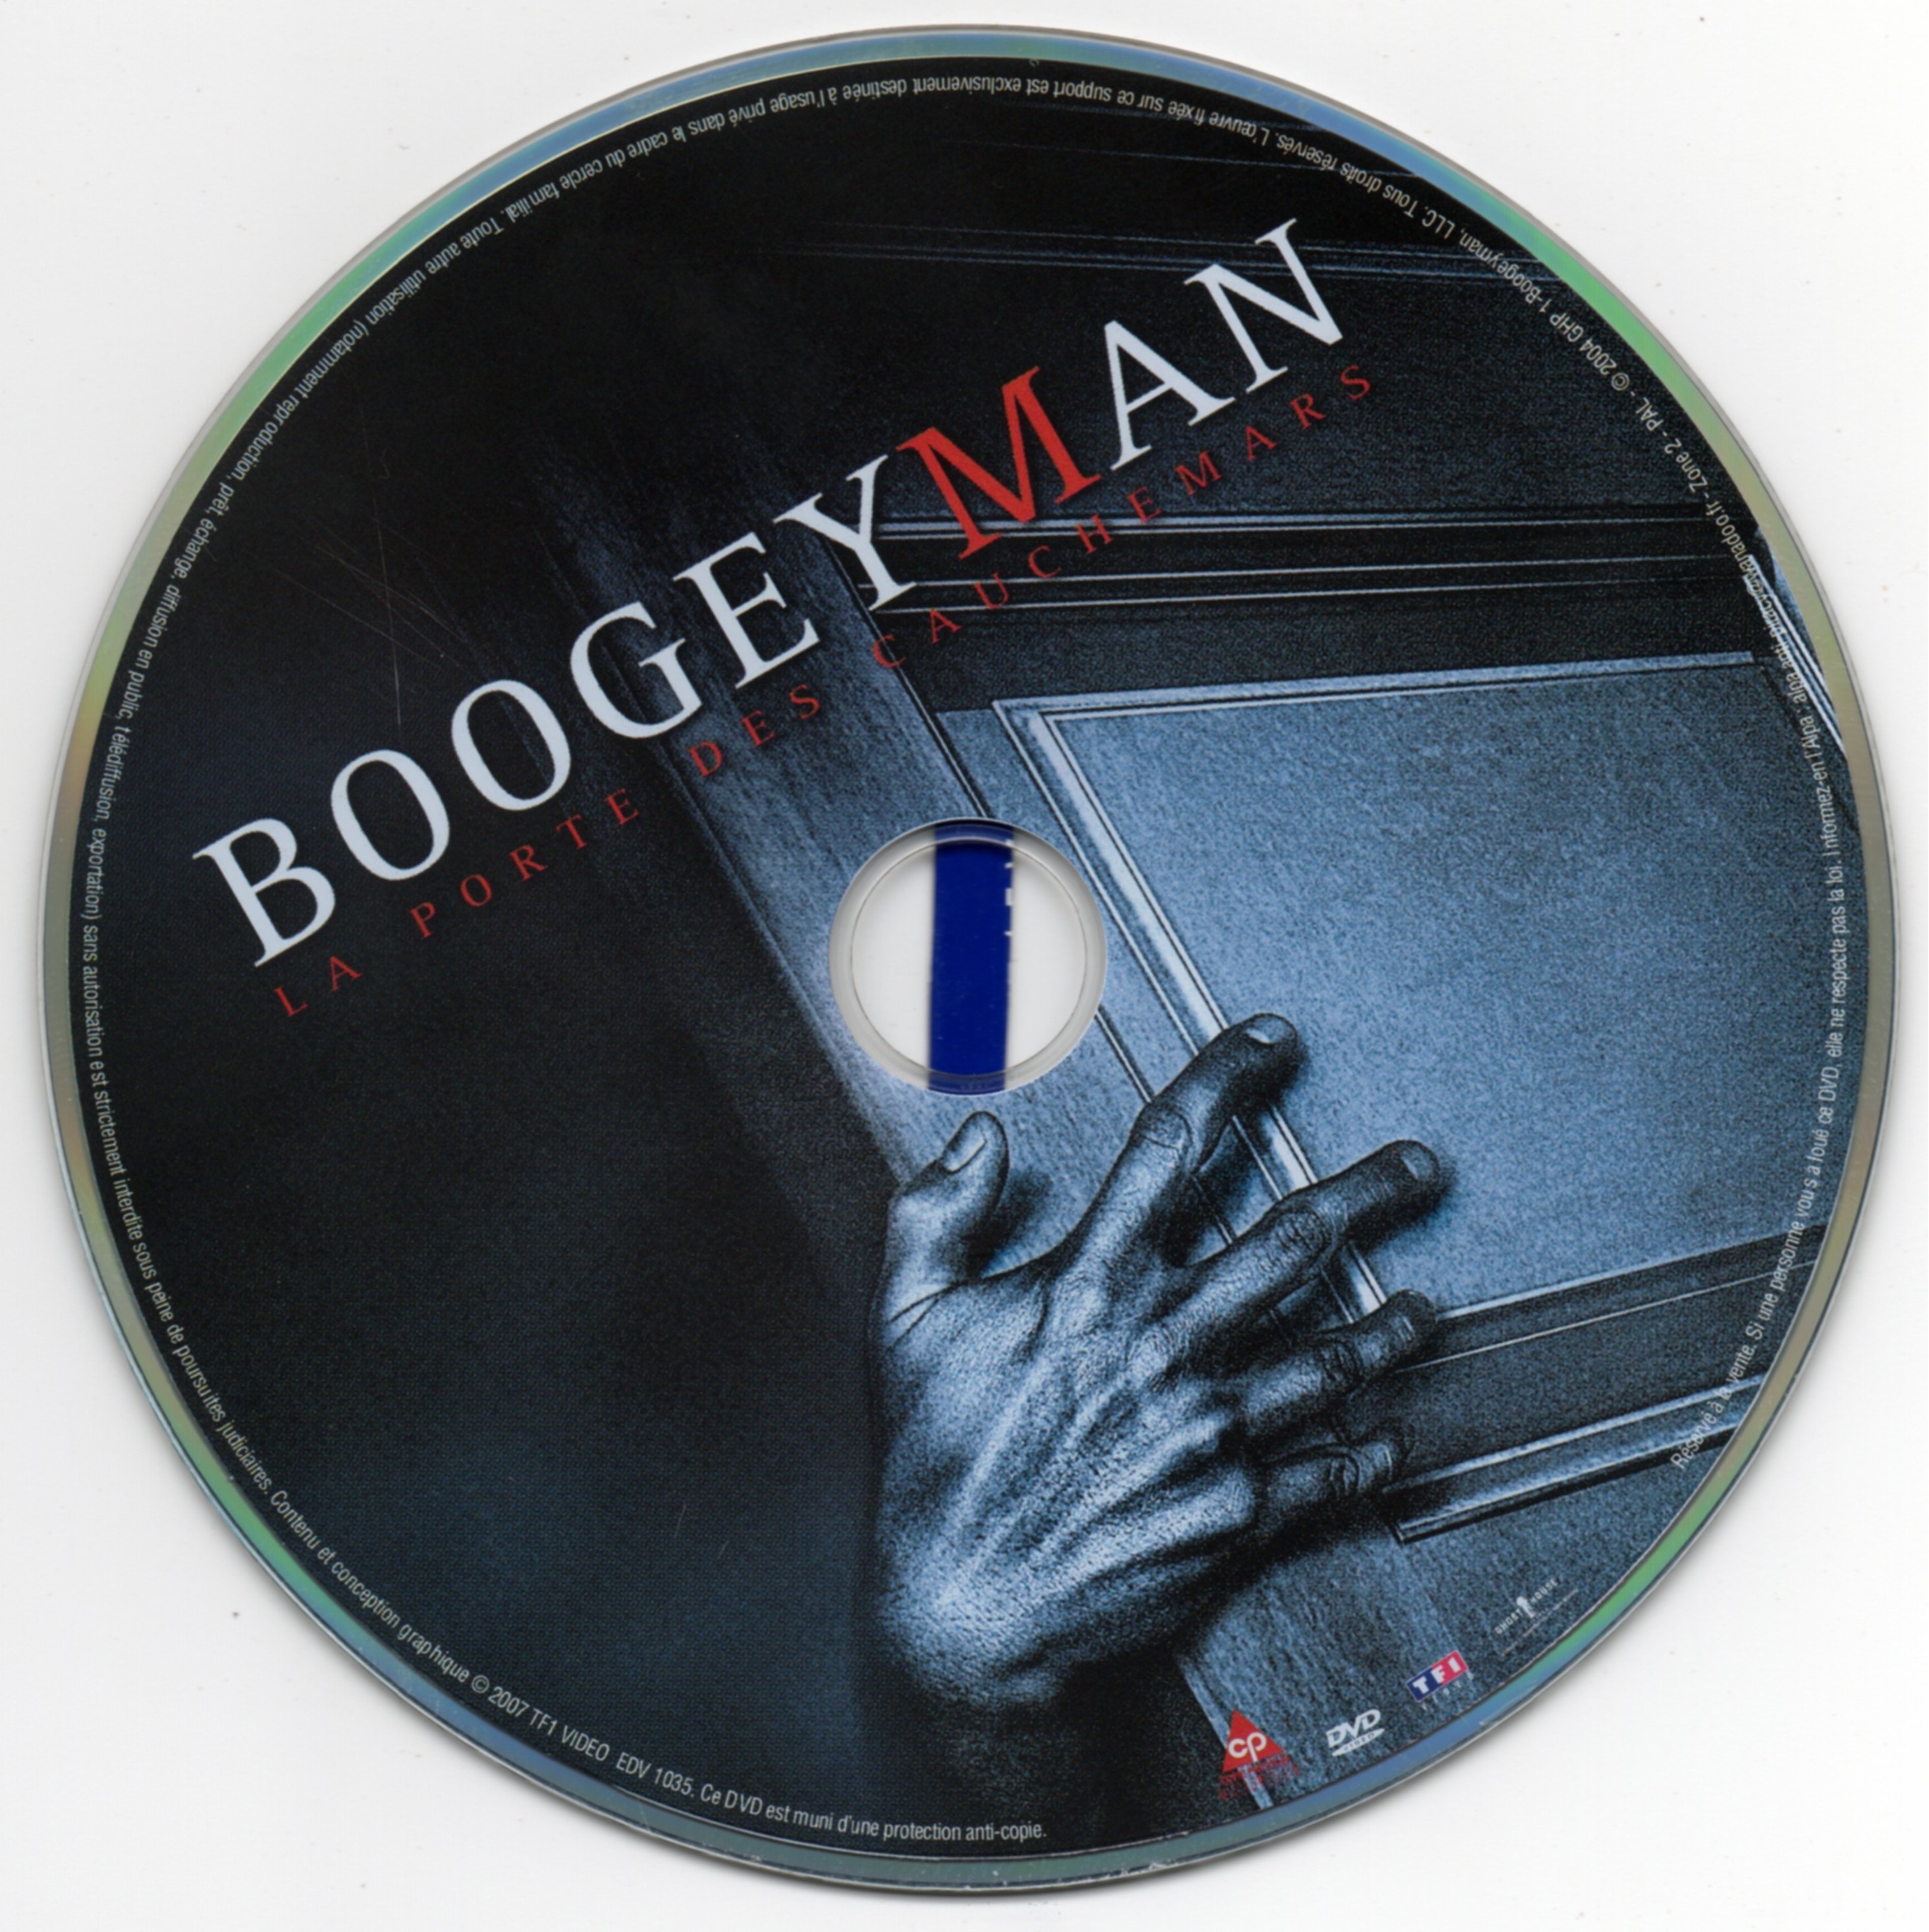 Boogeyman v2